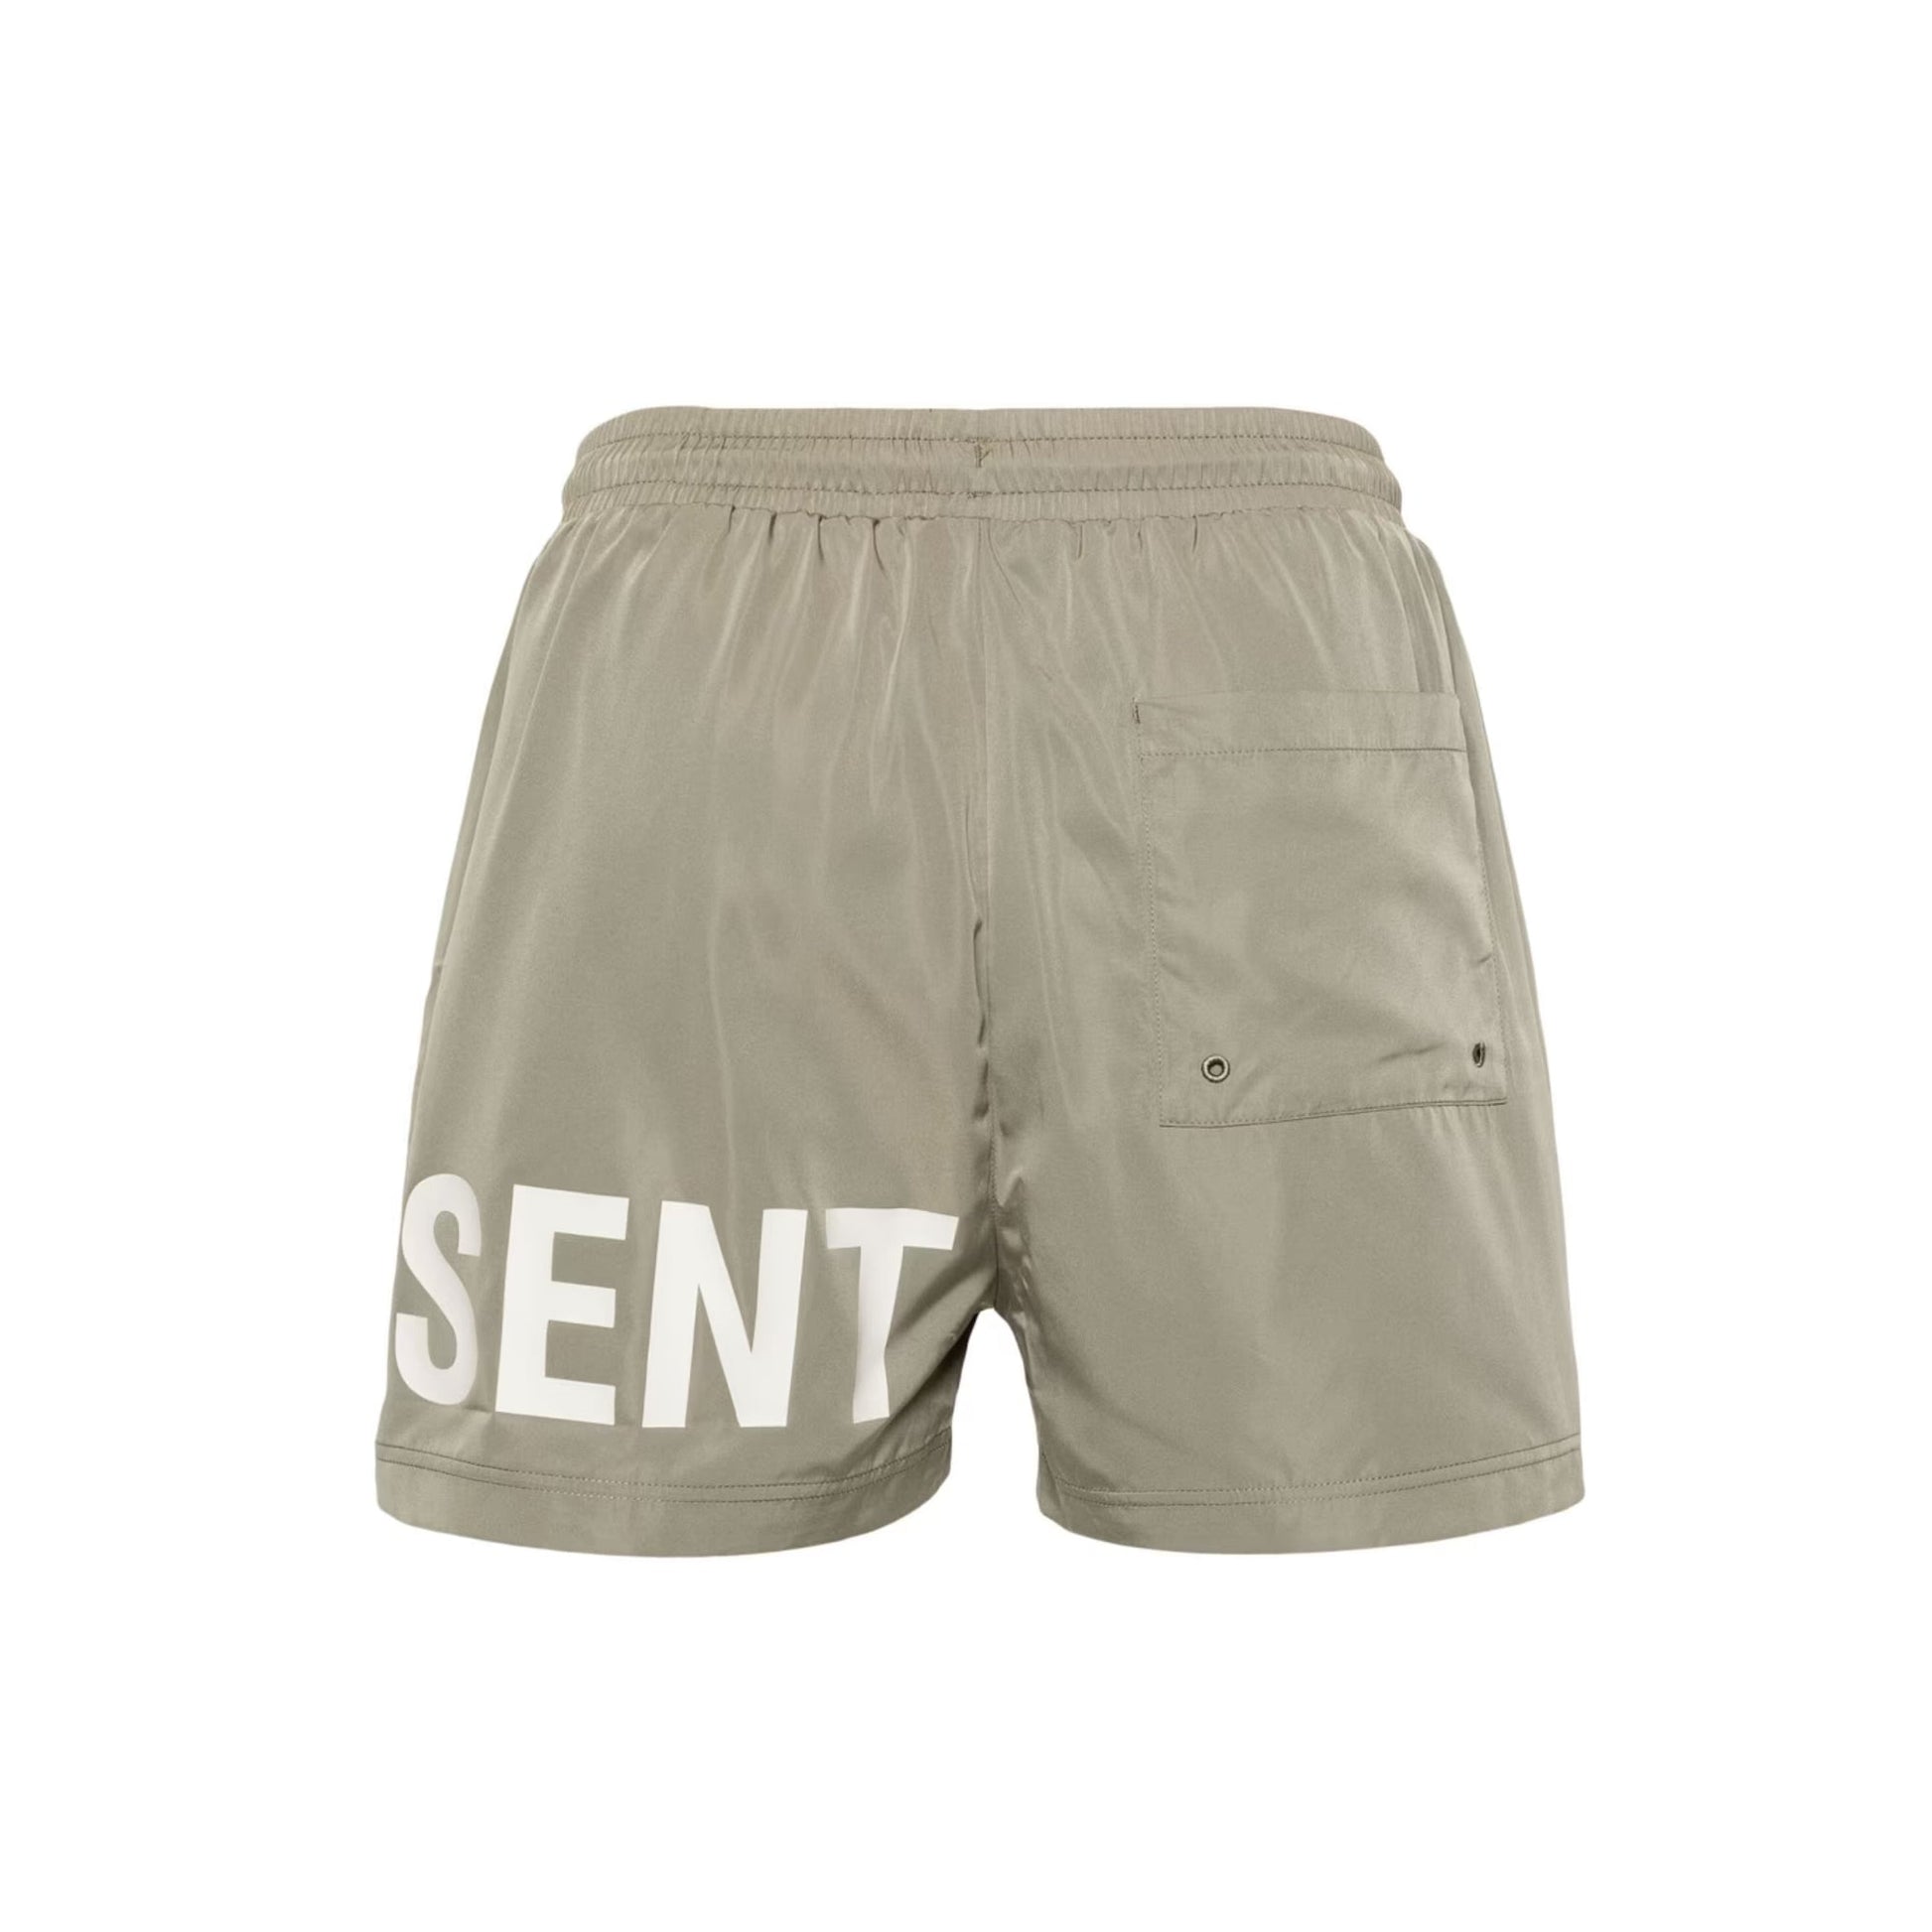 Represent Swim Short - 168 Khaki - Escape Menswear